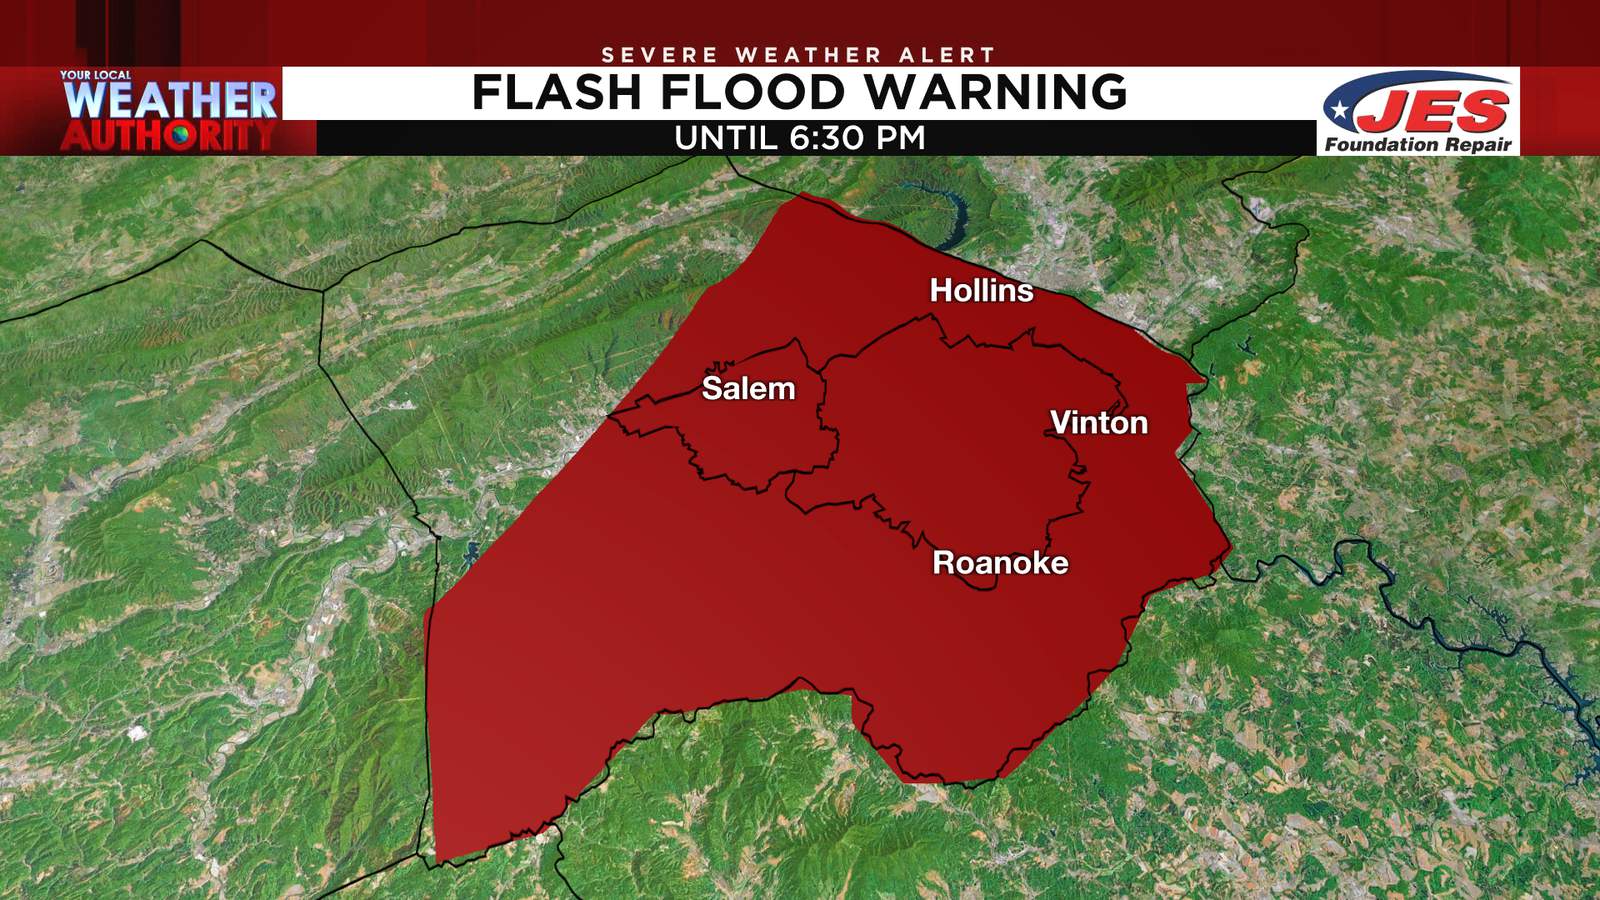 UPDATE: Flash flood warning in Roanoke canceled early